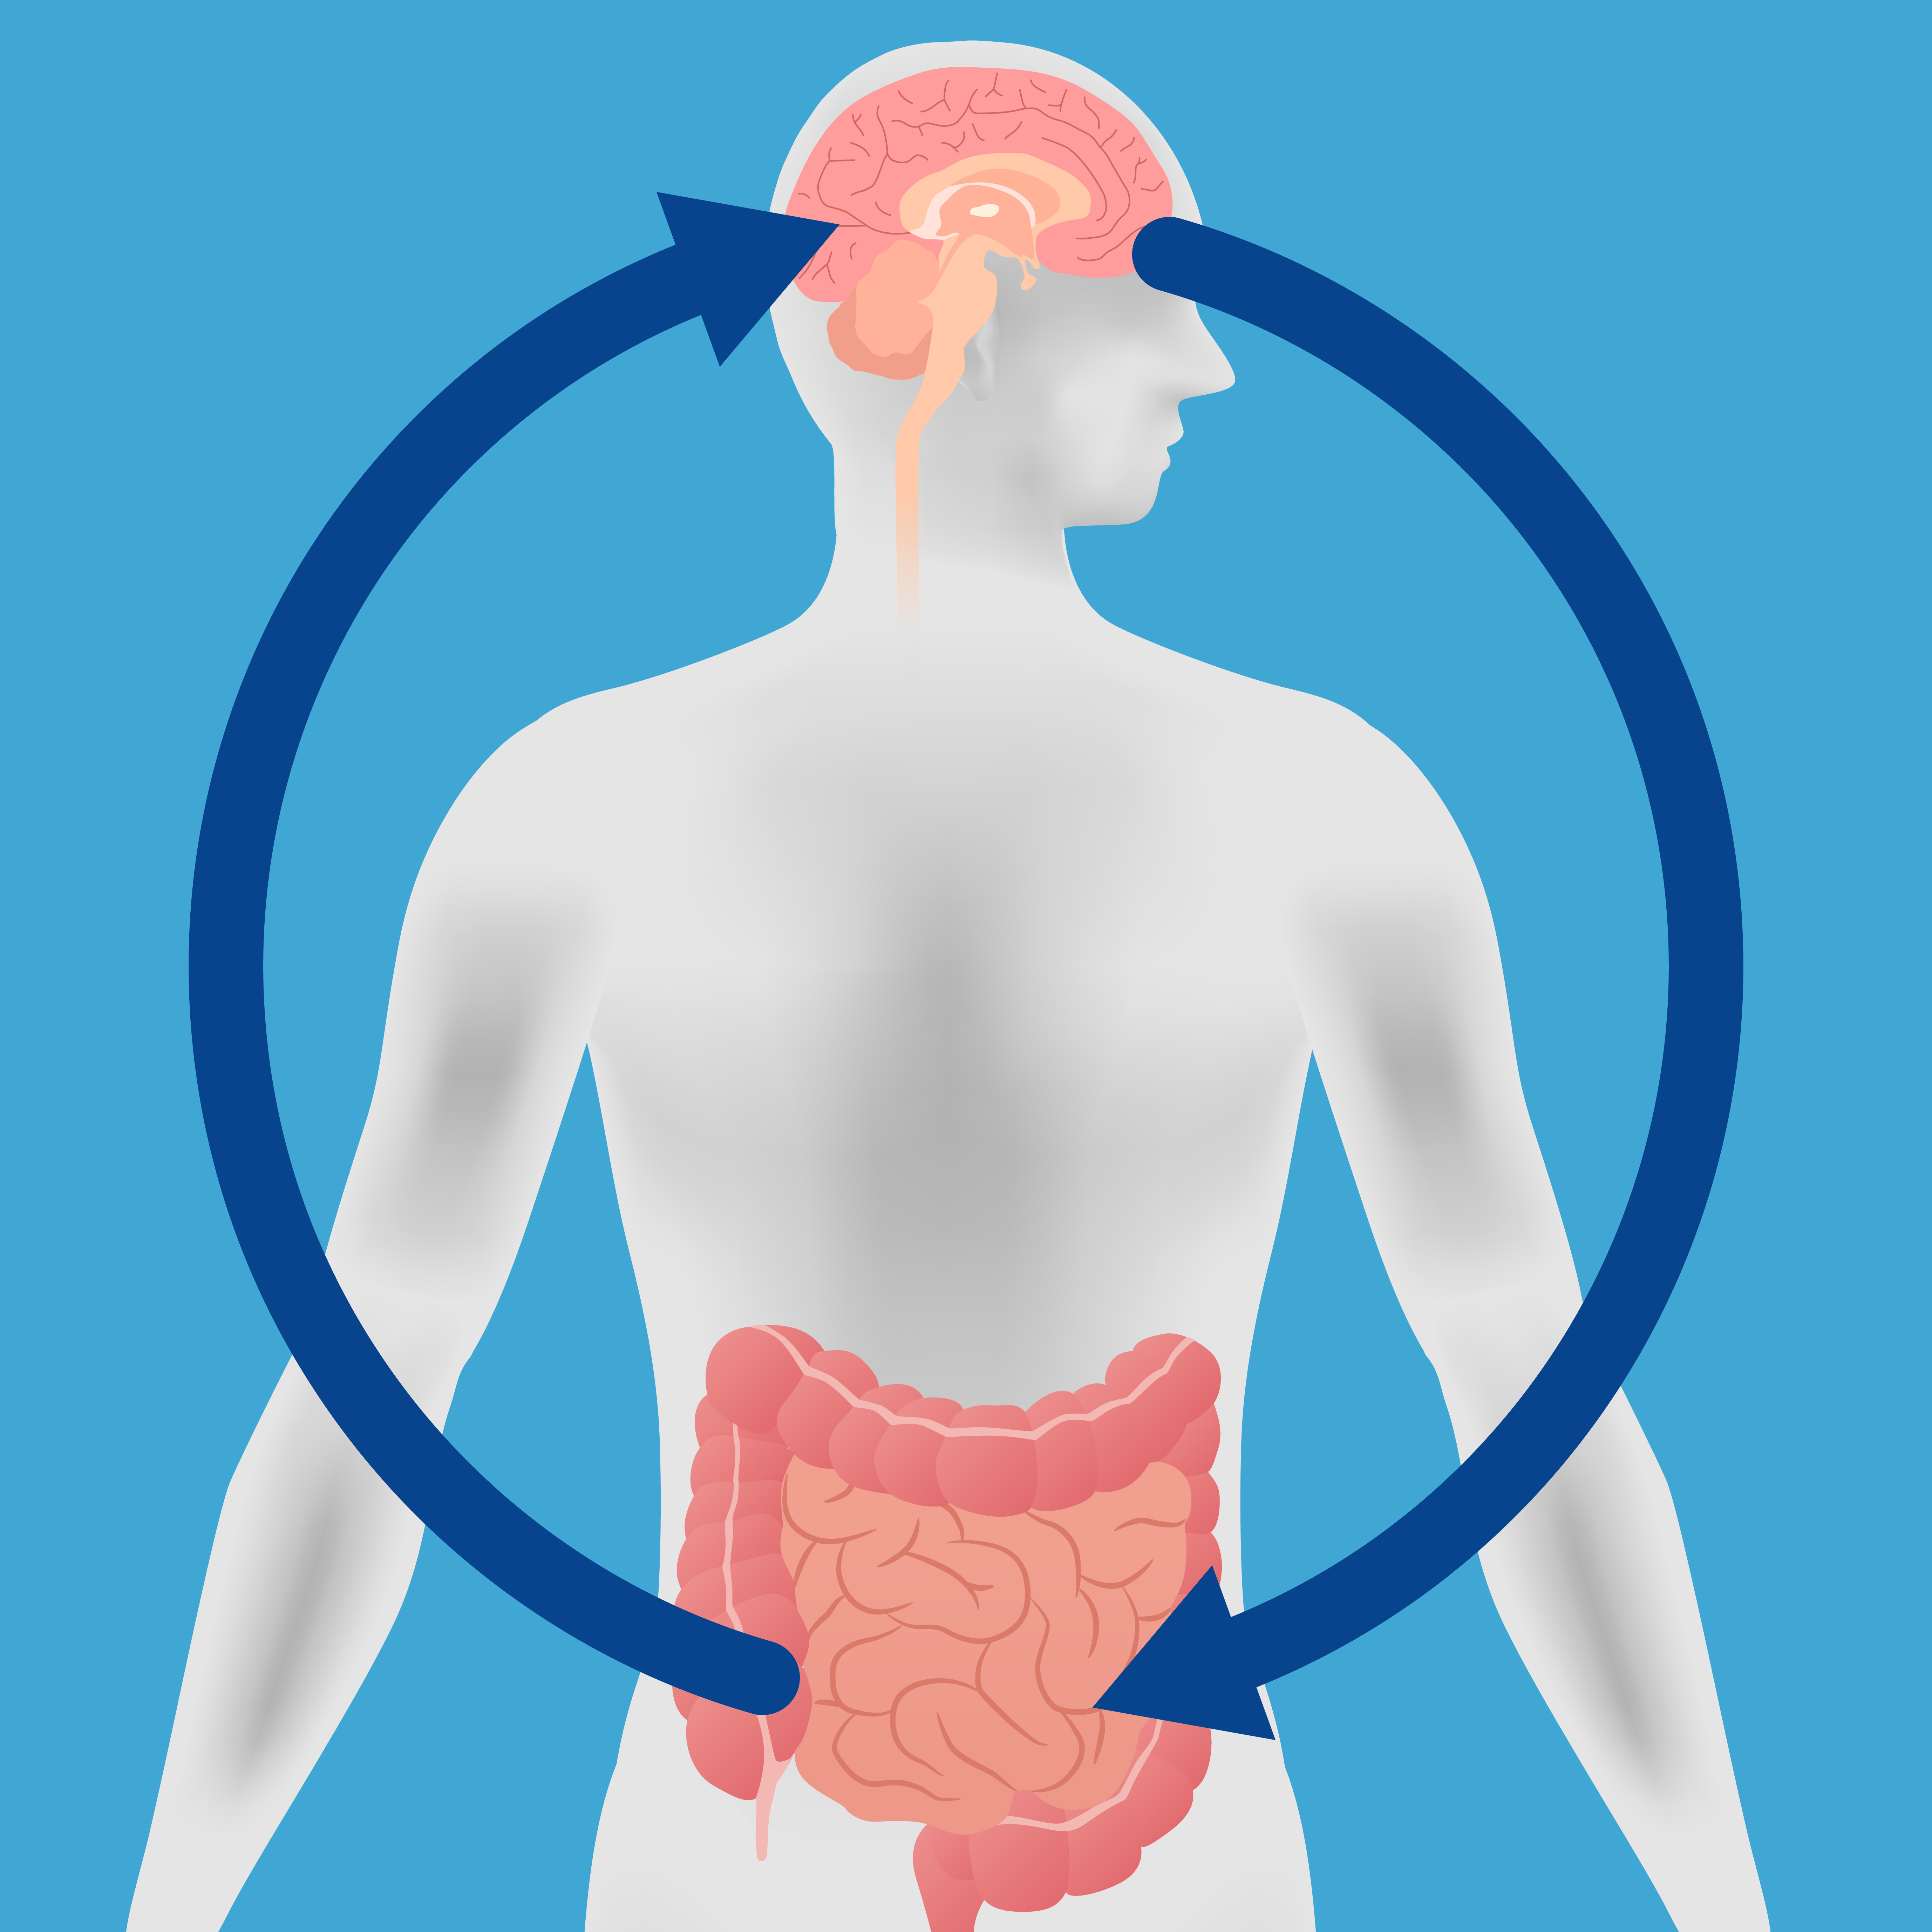 情緒化的大腸你知道嗎？腸道是情緒化的器官。既直接受情緒影響，亦可以